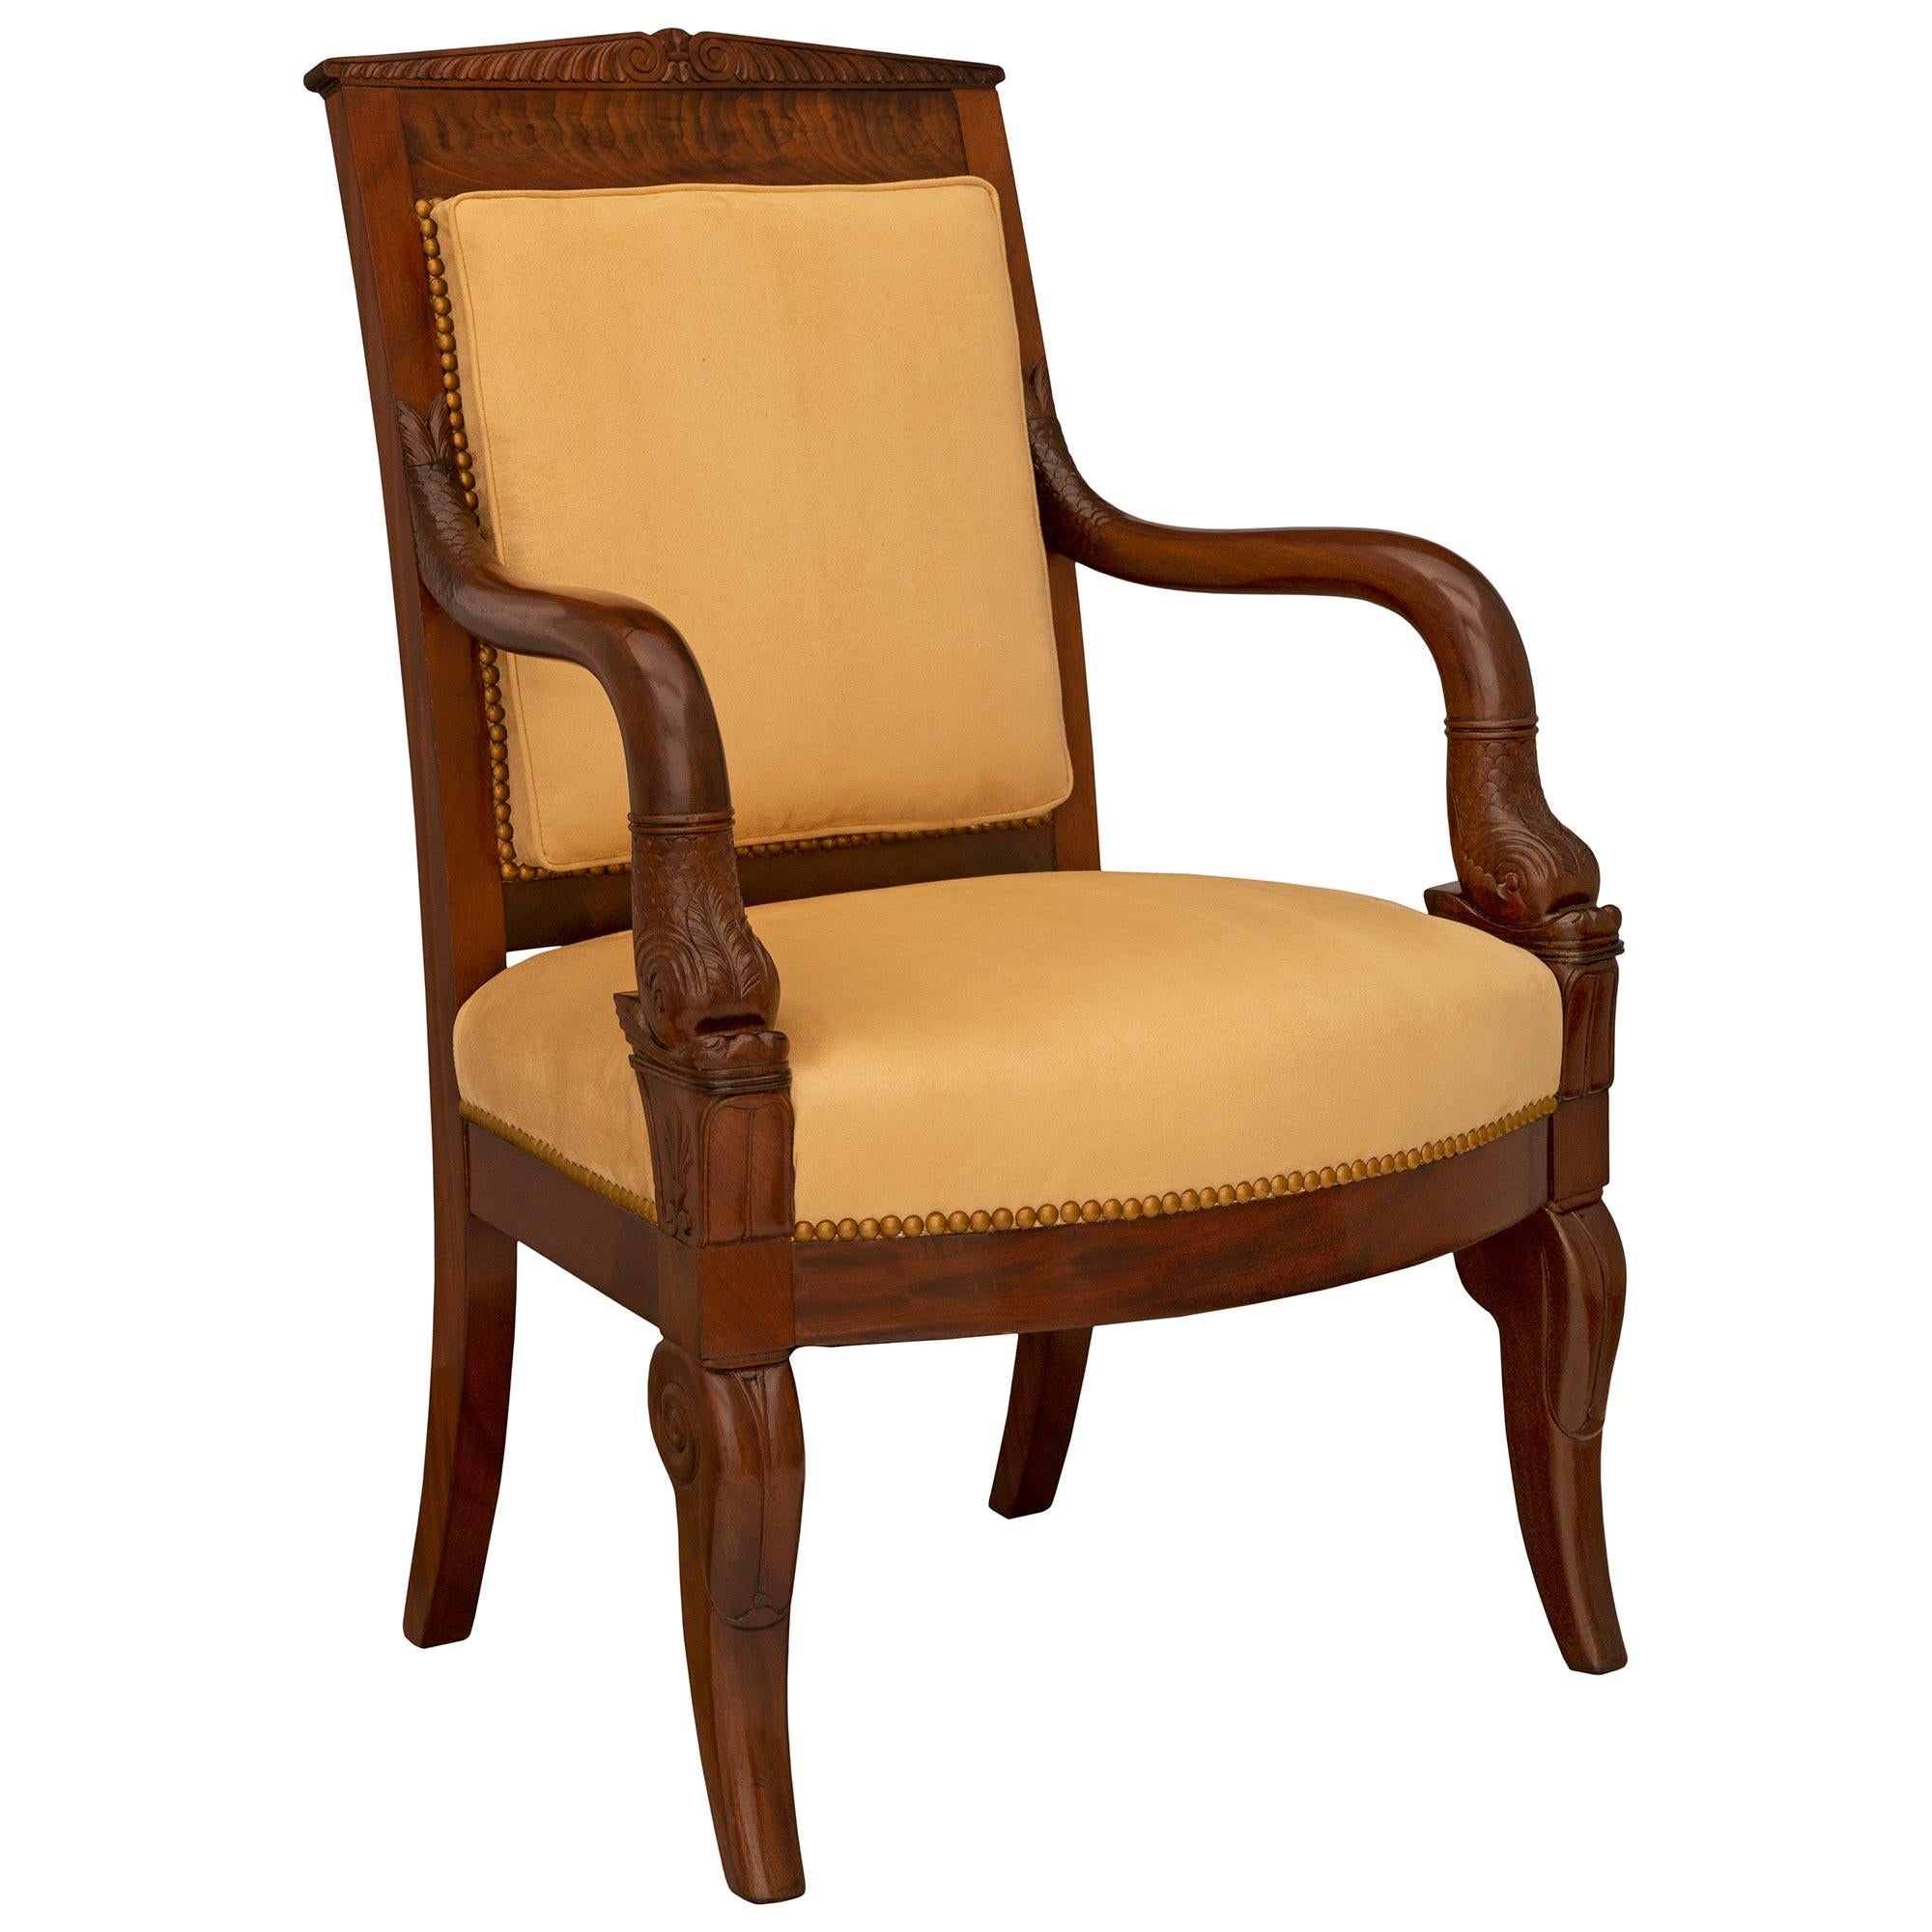 Magnifique fauteuil de bureau en acajou flammé de style Empire du XIXe siècle. Le fauteuil repose sur des pieds robustes, élégamment enroulés et finement sculptés à l'avant, et sur des pieds carrés légèrement incurvés à l'arrière. Chaque bras